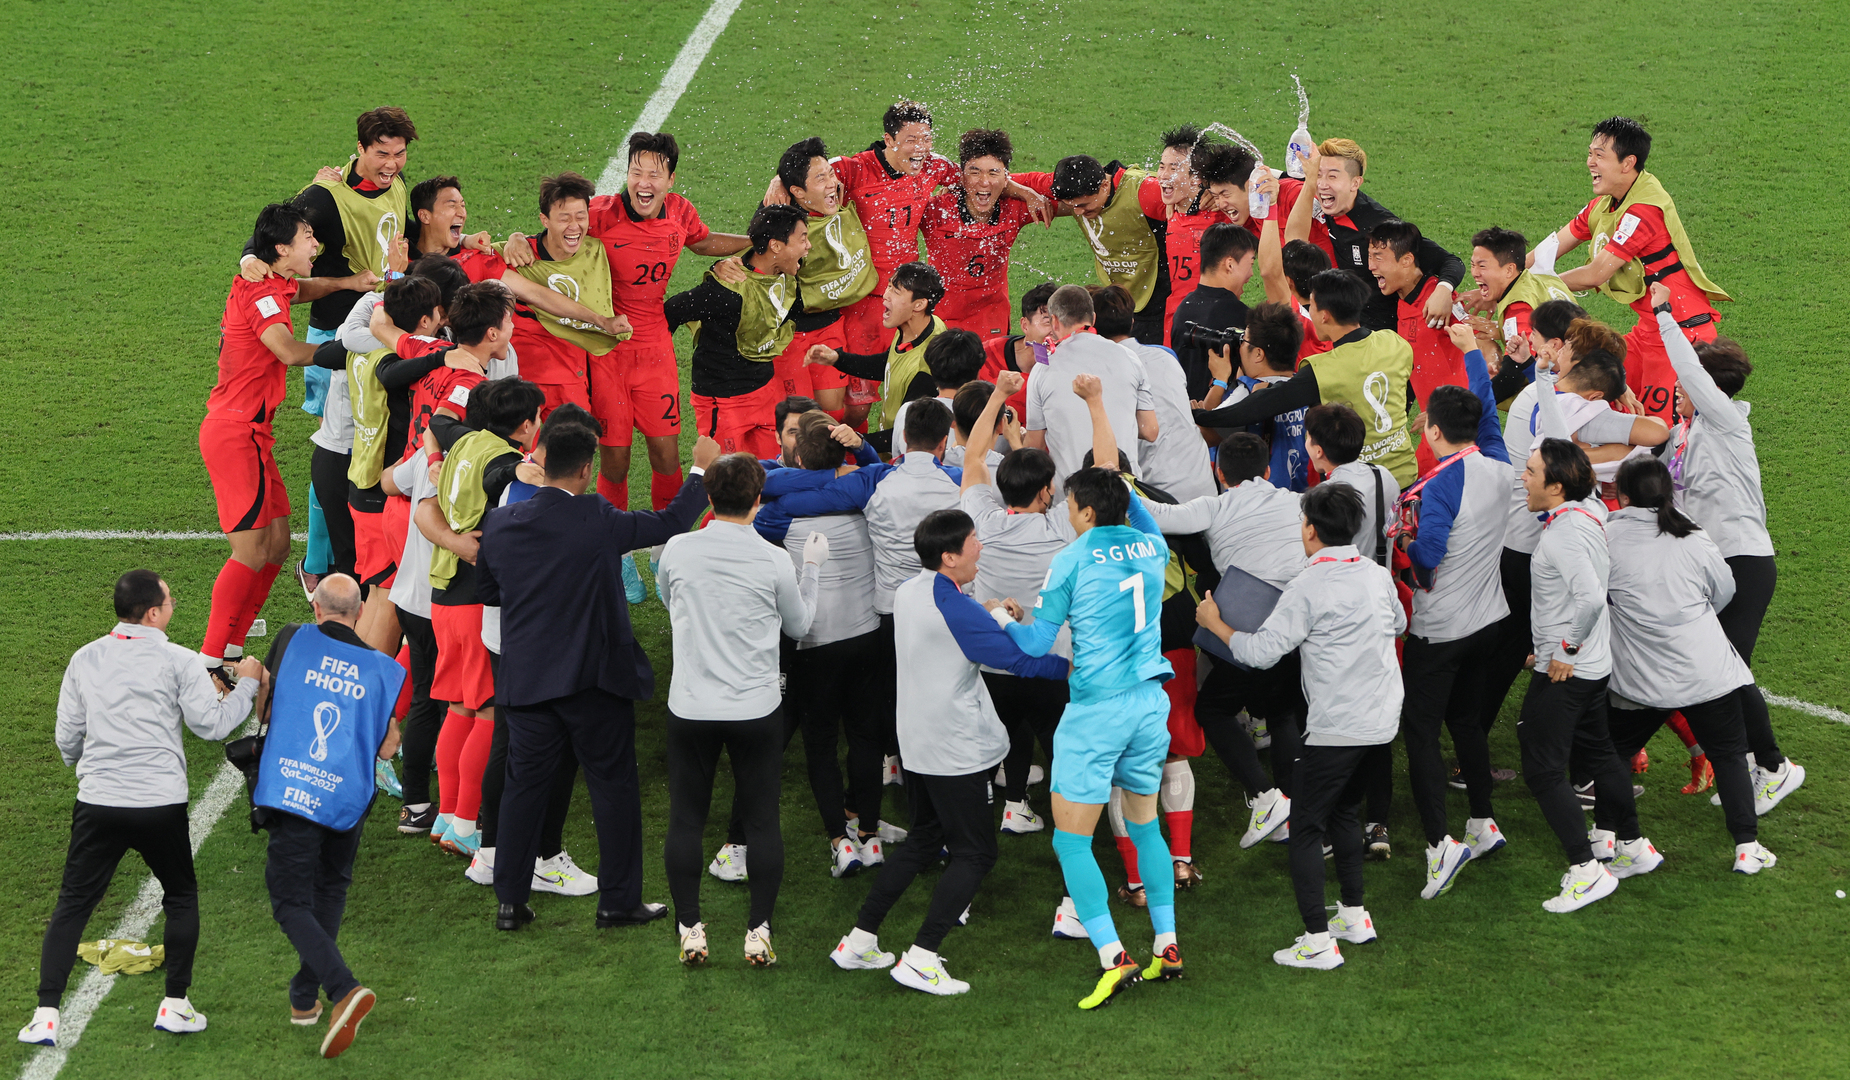 دقائق عصيبة.. شاهد كيف انتظر لاعبو كوريا الجنوبية معرفة نتيجة هوية المتأهل